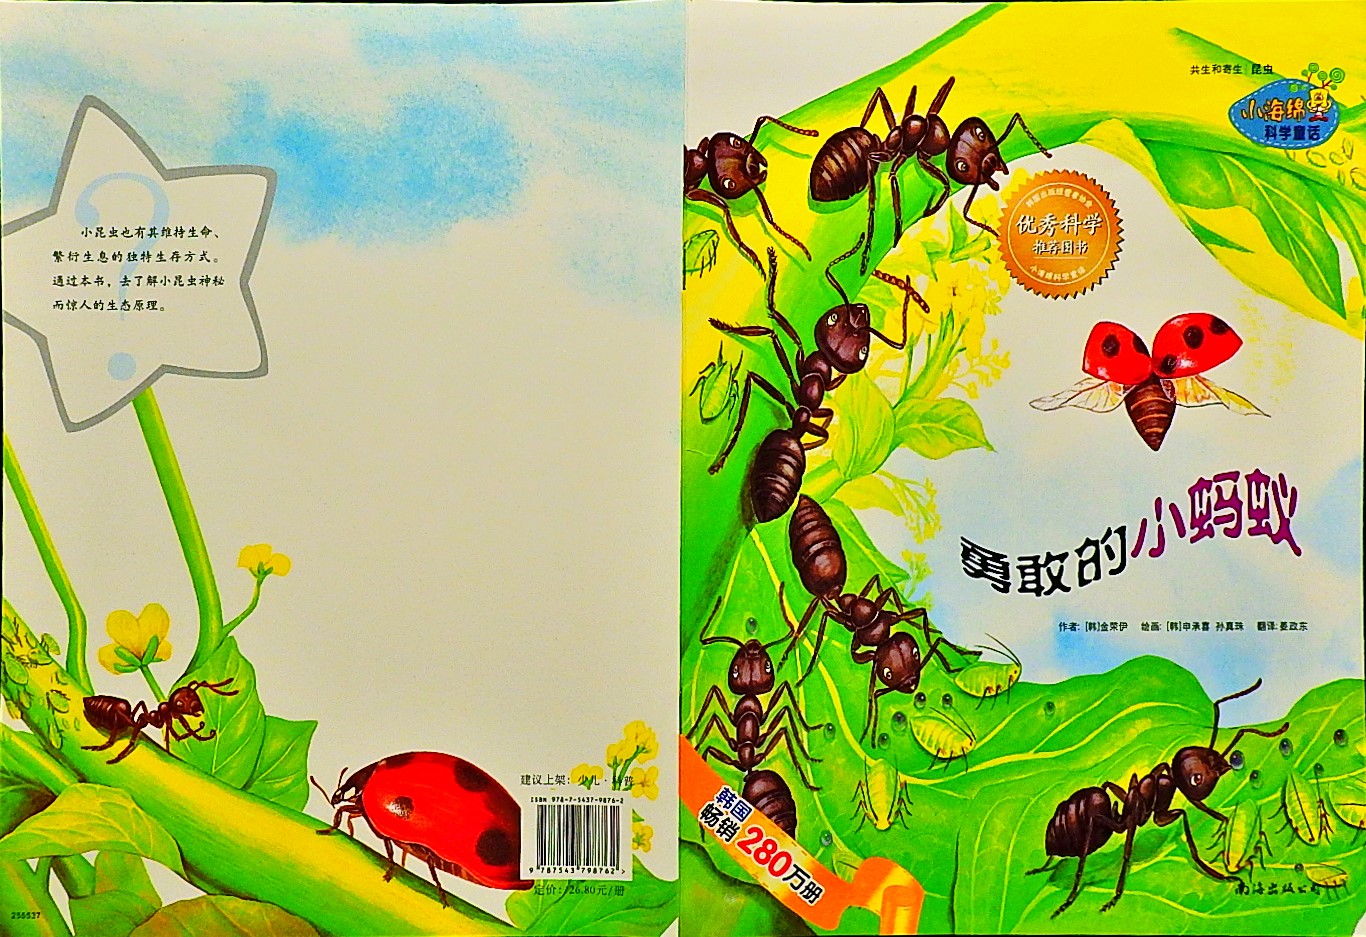 勇敢的小蚂蚁 (01),绘本,绘本故事,绘本阅读,故事书,童书,图画书,课外阅读